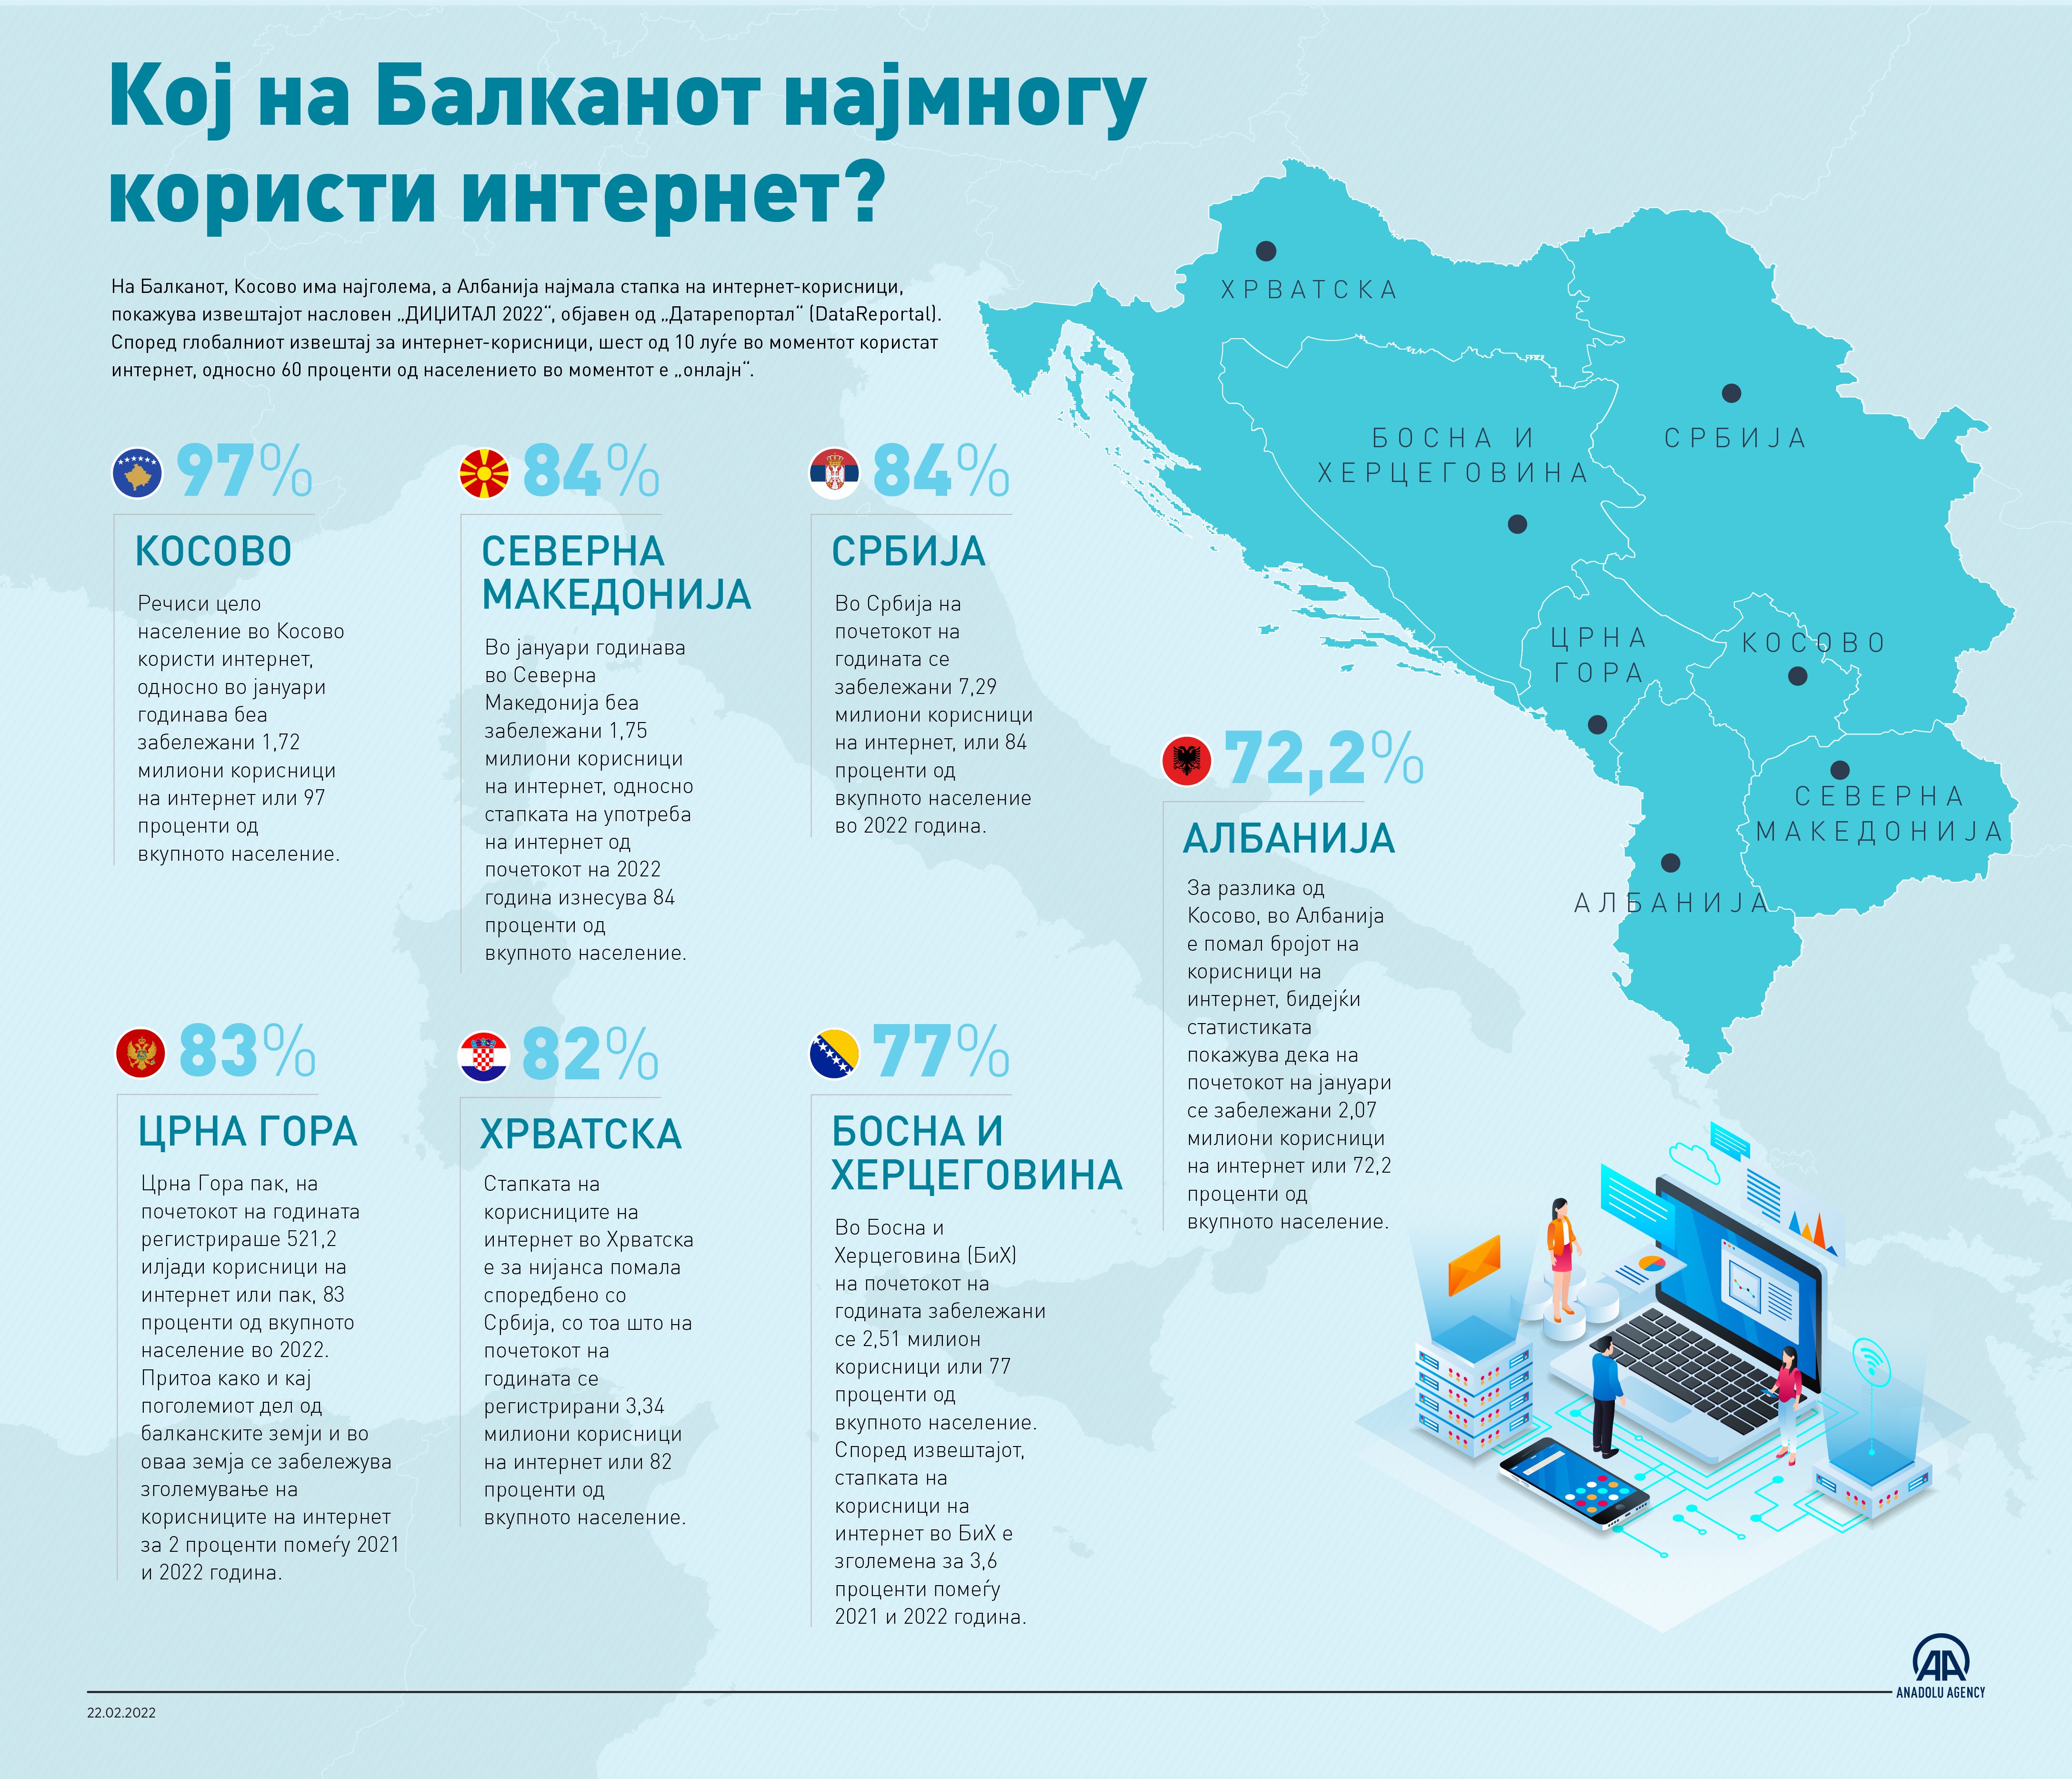 Кој на Балканот најмногу користи интернет?